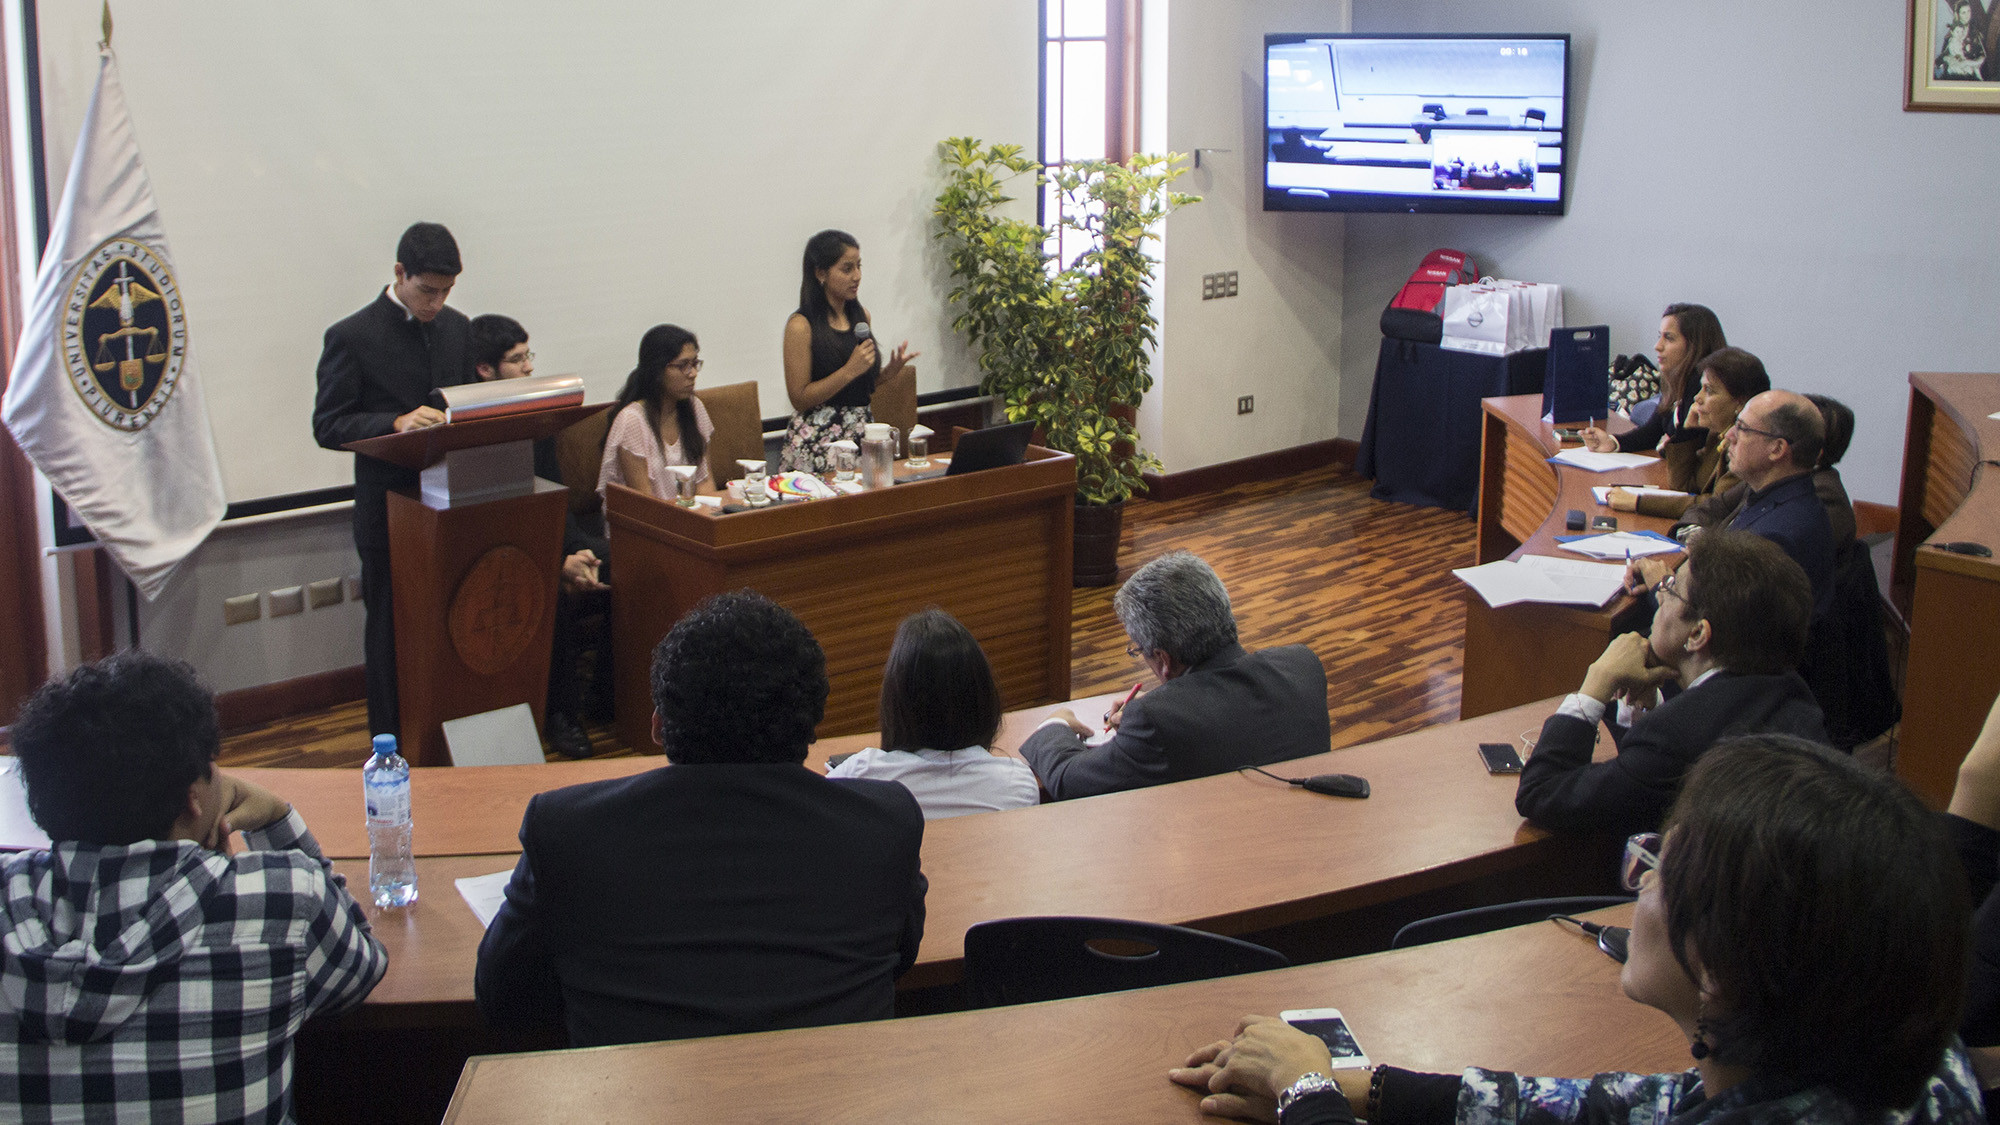 Los alumnos de Campus Lima expusieron su propuesta frente a los miembros del jurado y en videoconferencia con el grupo de alumnos finalistas de Campus Piura.